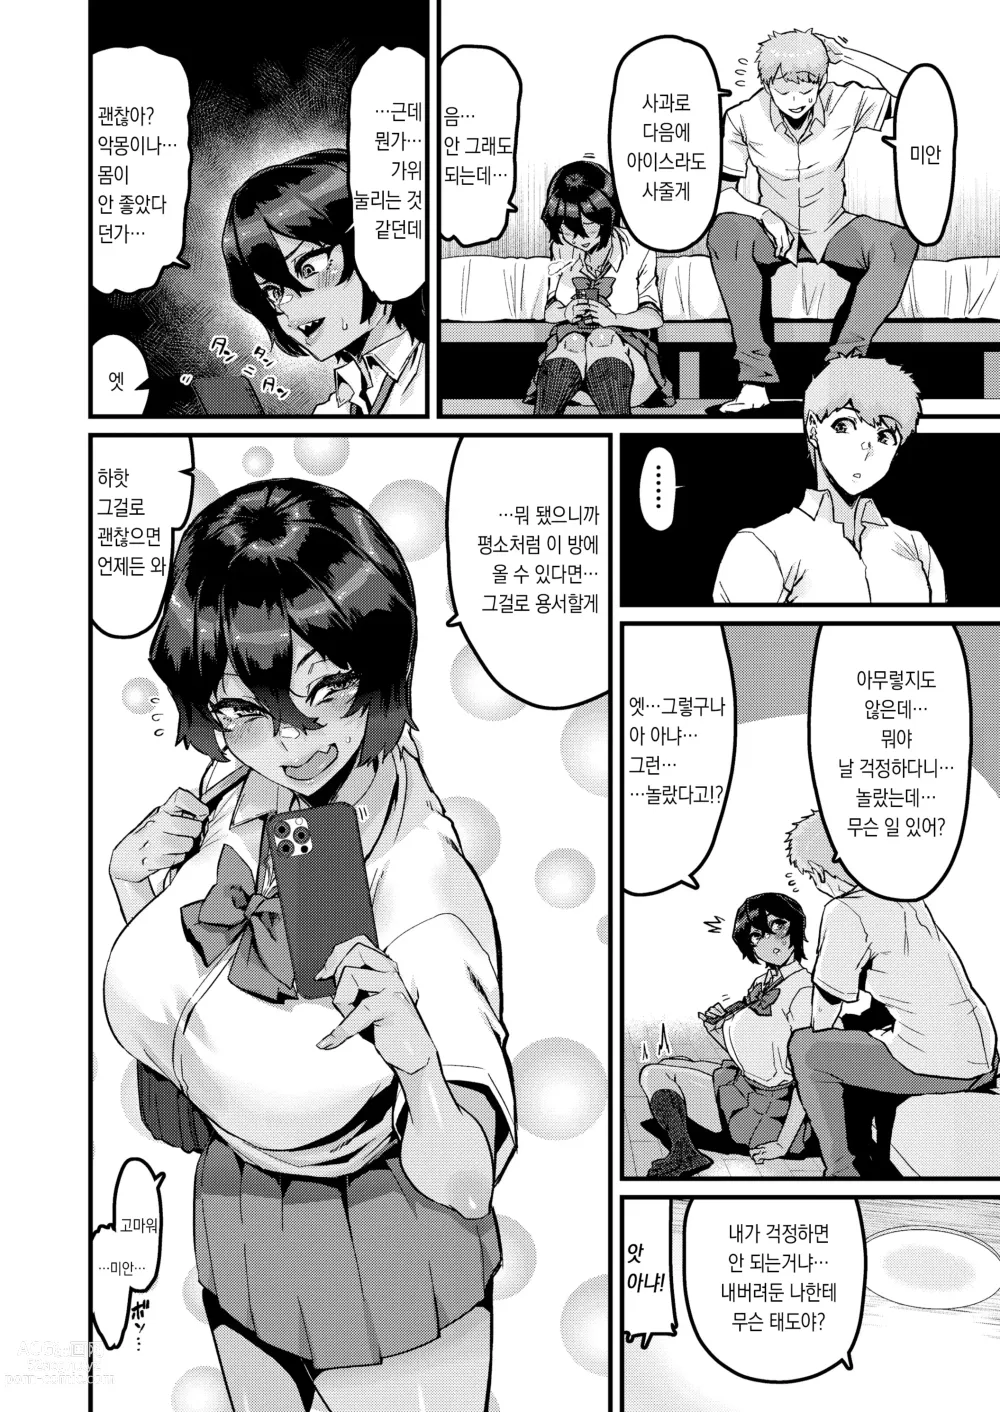 Page 28 of doujinshi 쪽이 계속 전부터 좋아했는데